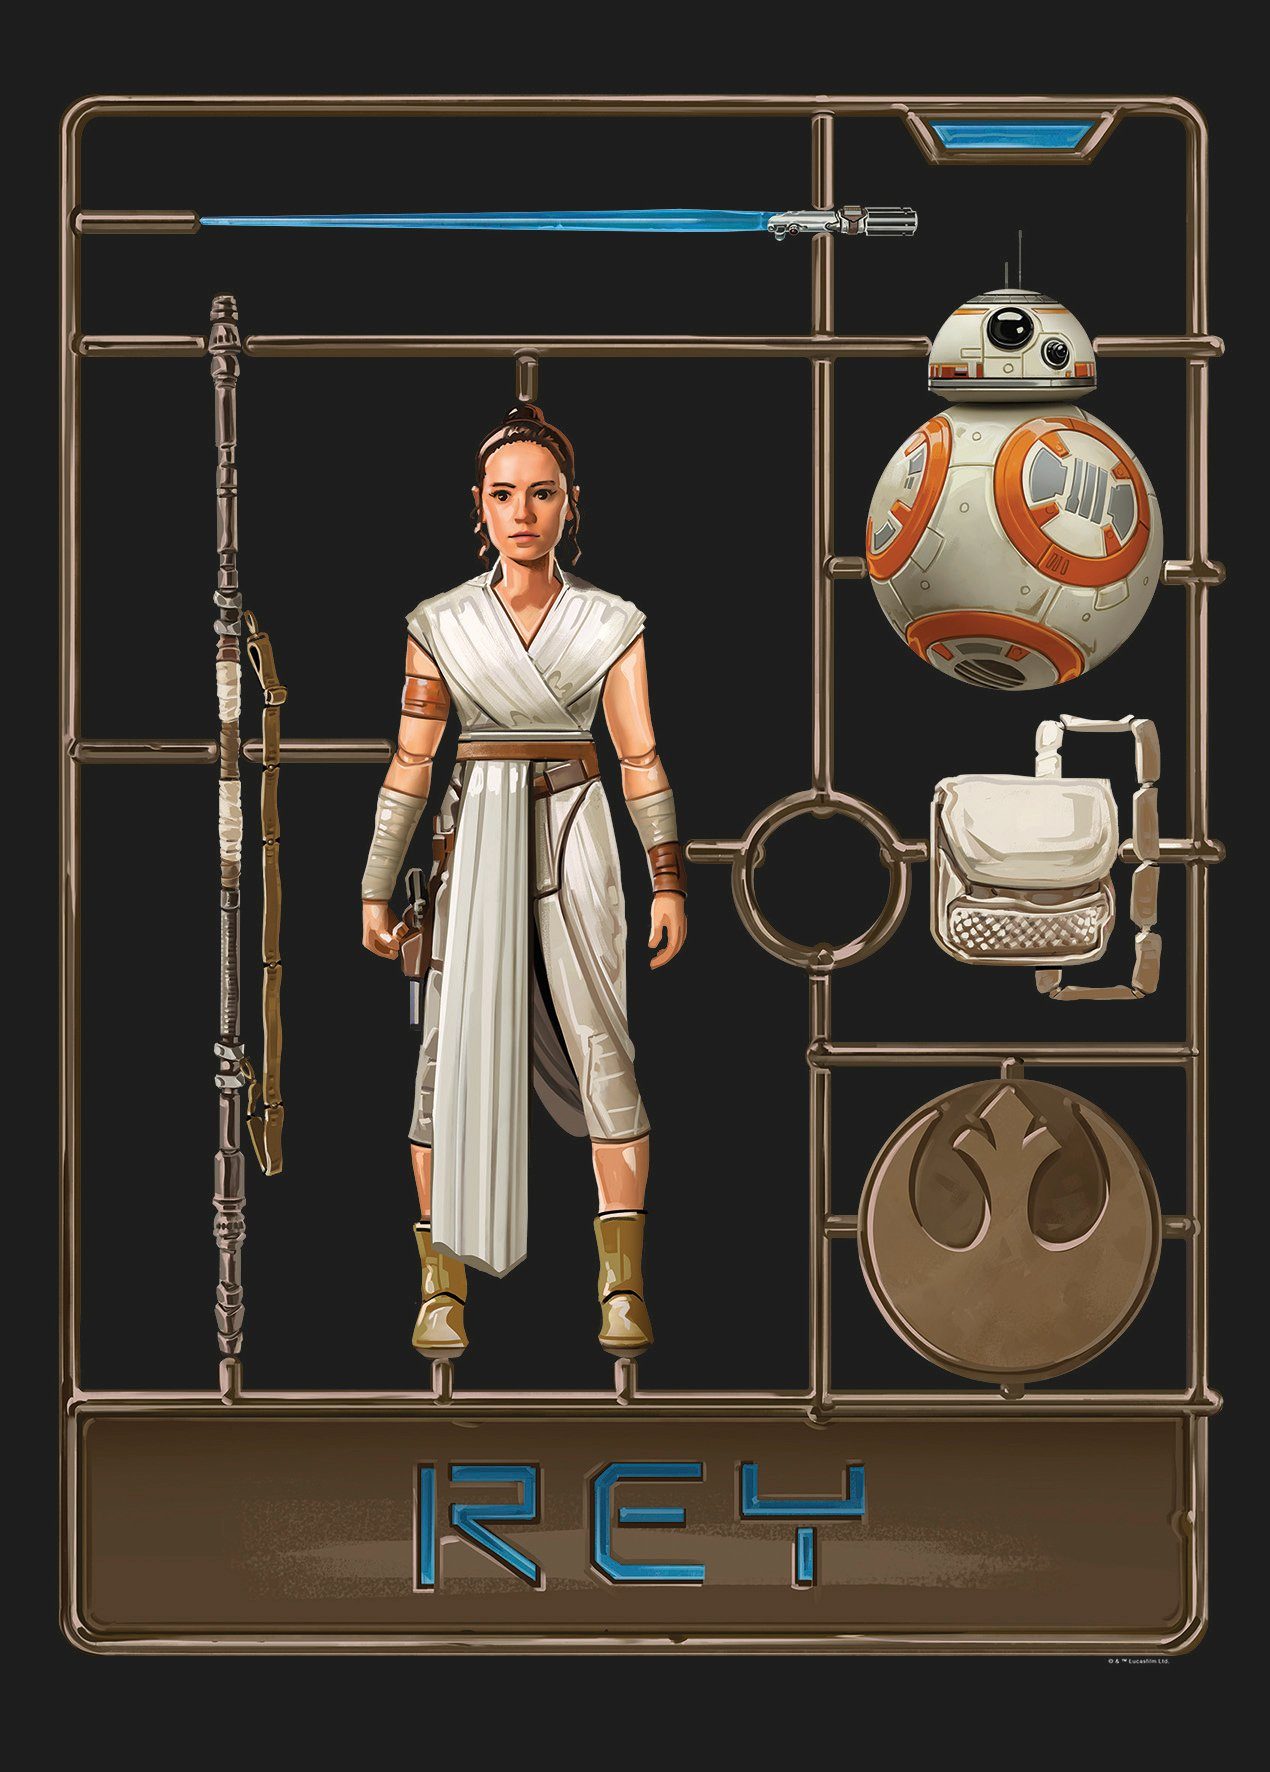 Komar Poster Star Wars Toy Rey